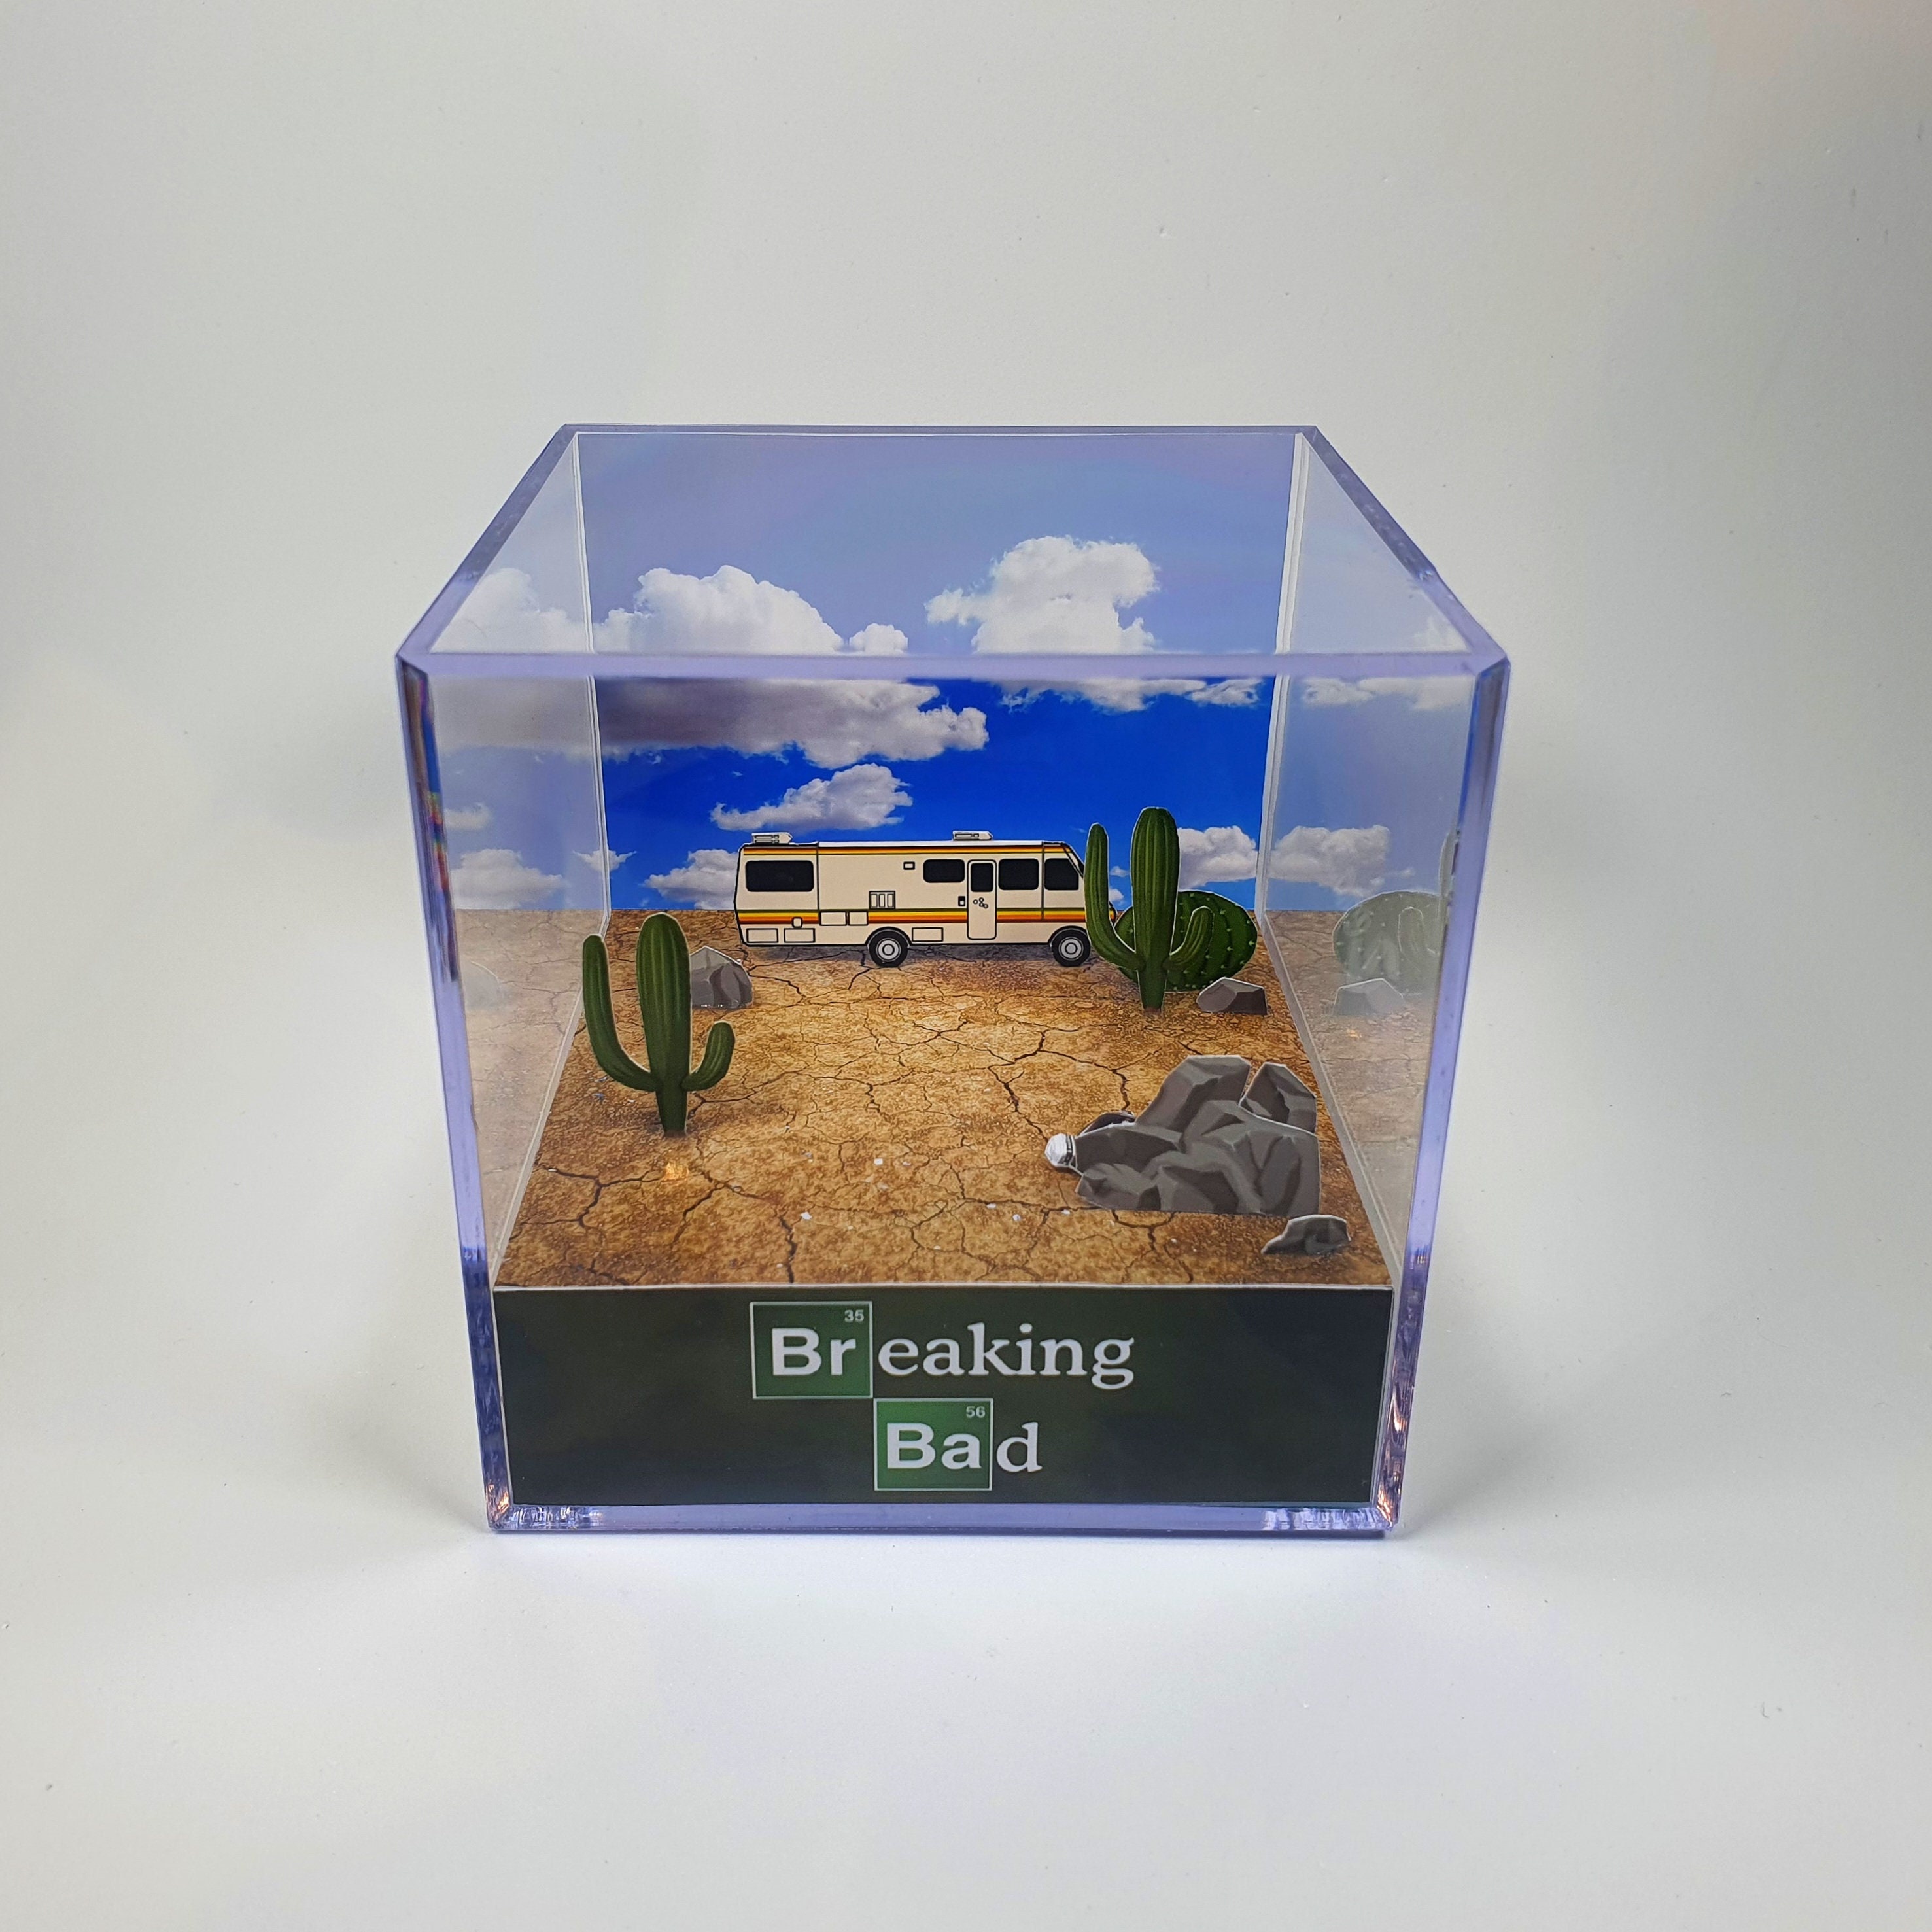 Breaking Bad La nave di cristallo Cubo diorama con suoni e luci